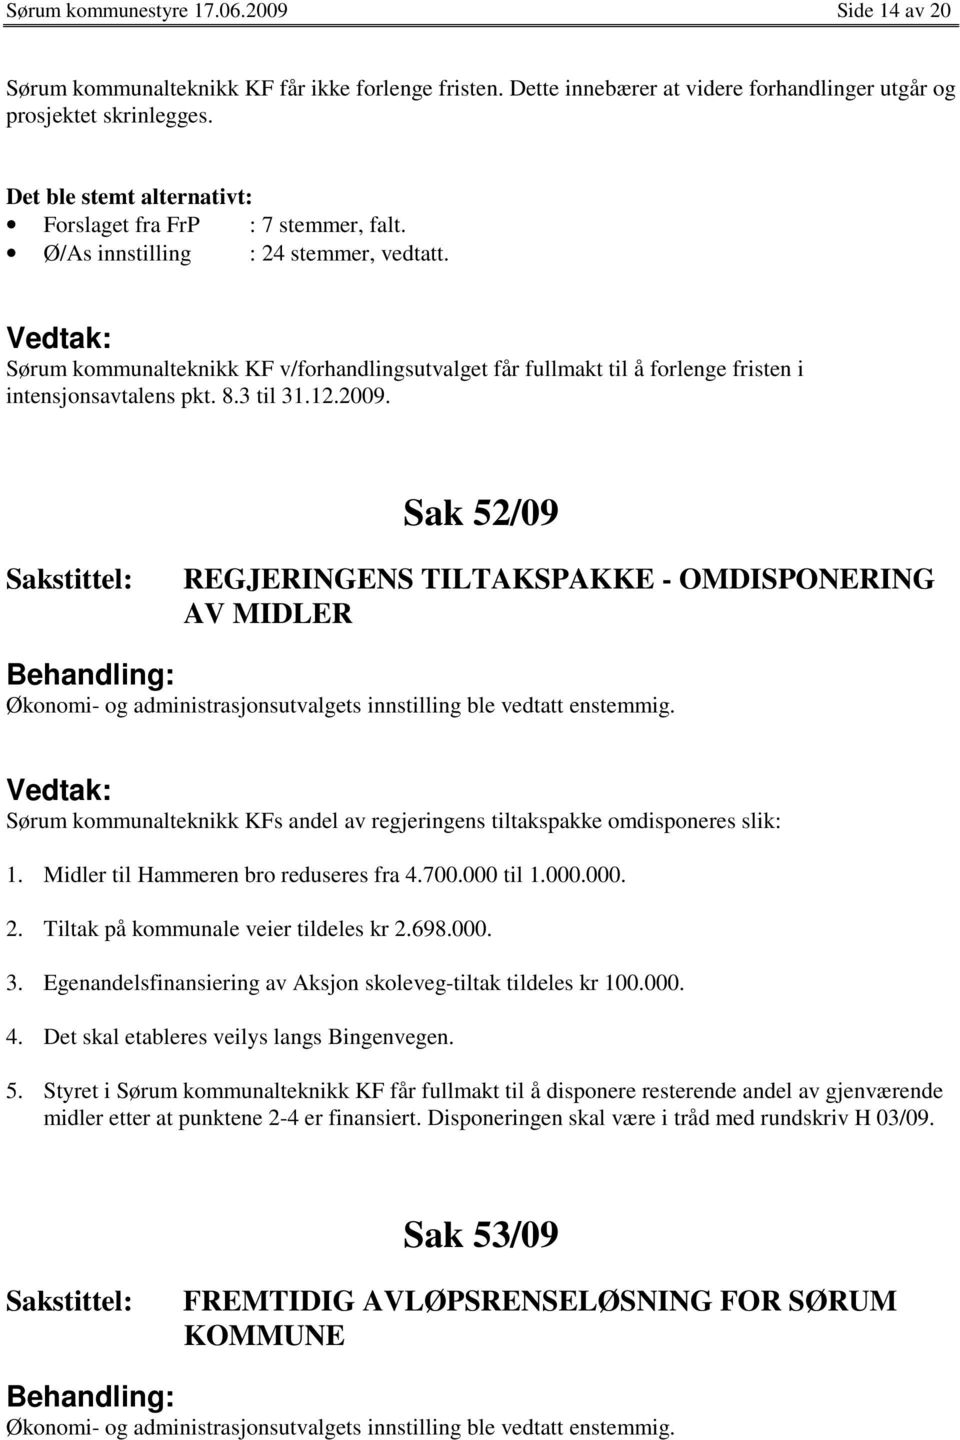 Sørum kommunalteknikk KF v/forhandlingsutvalget får fullmakt til å forlenge fristen i intensjonsavtalens pkt. 8.3 til 31.12.2009.